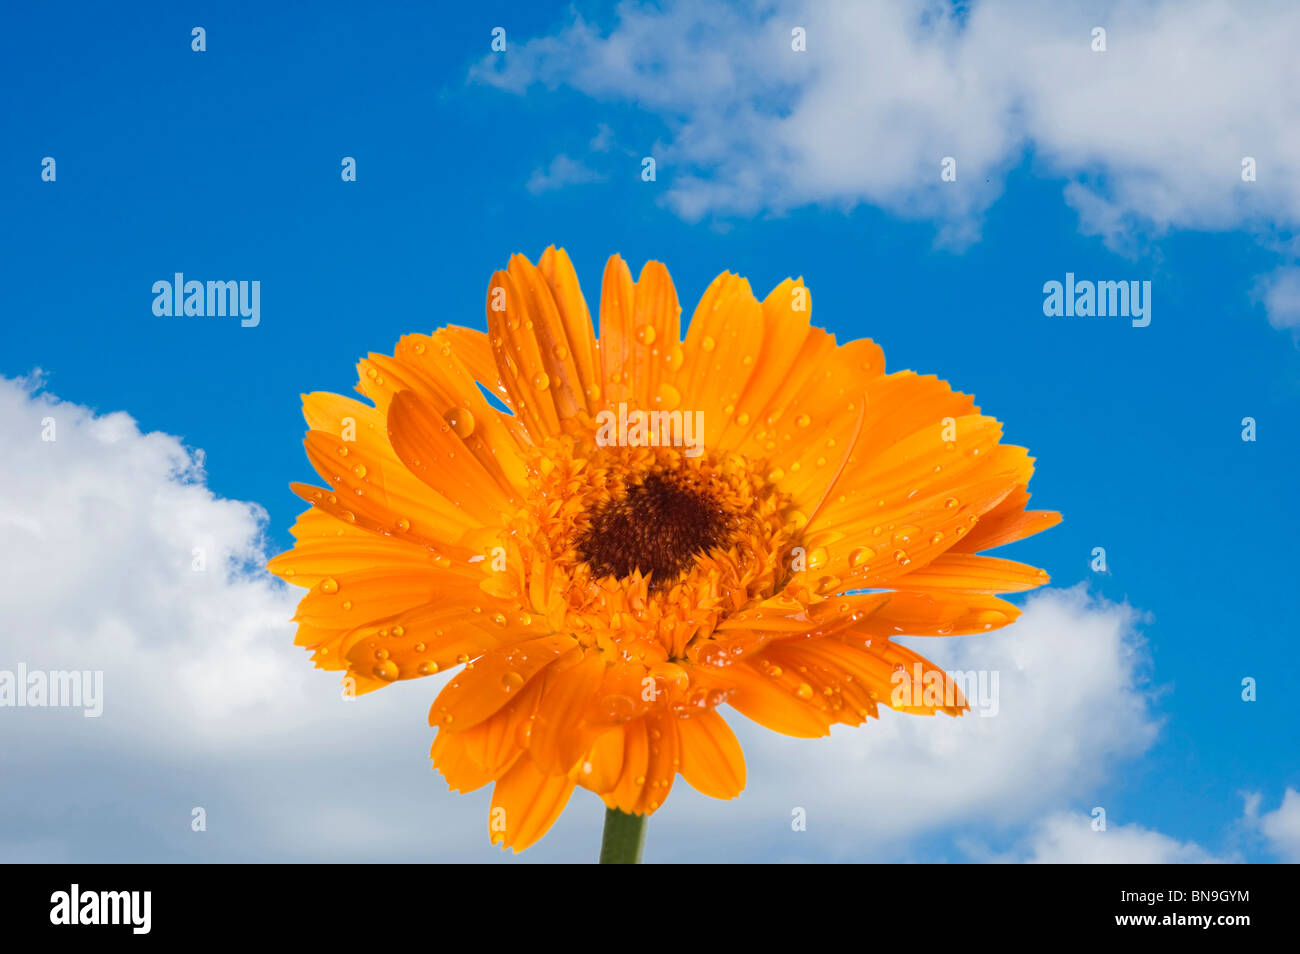 Objekt auf blauem Himmel - dekorative Blumen schließen sich Stockfoto